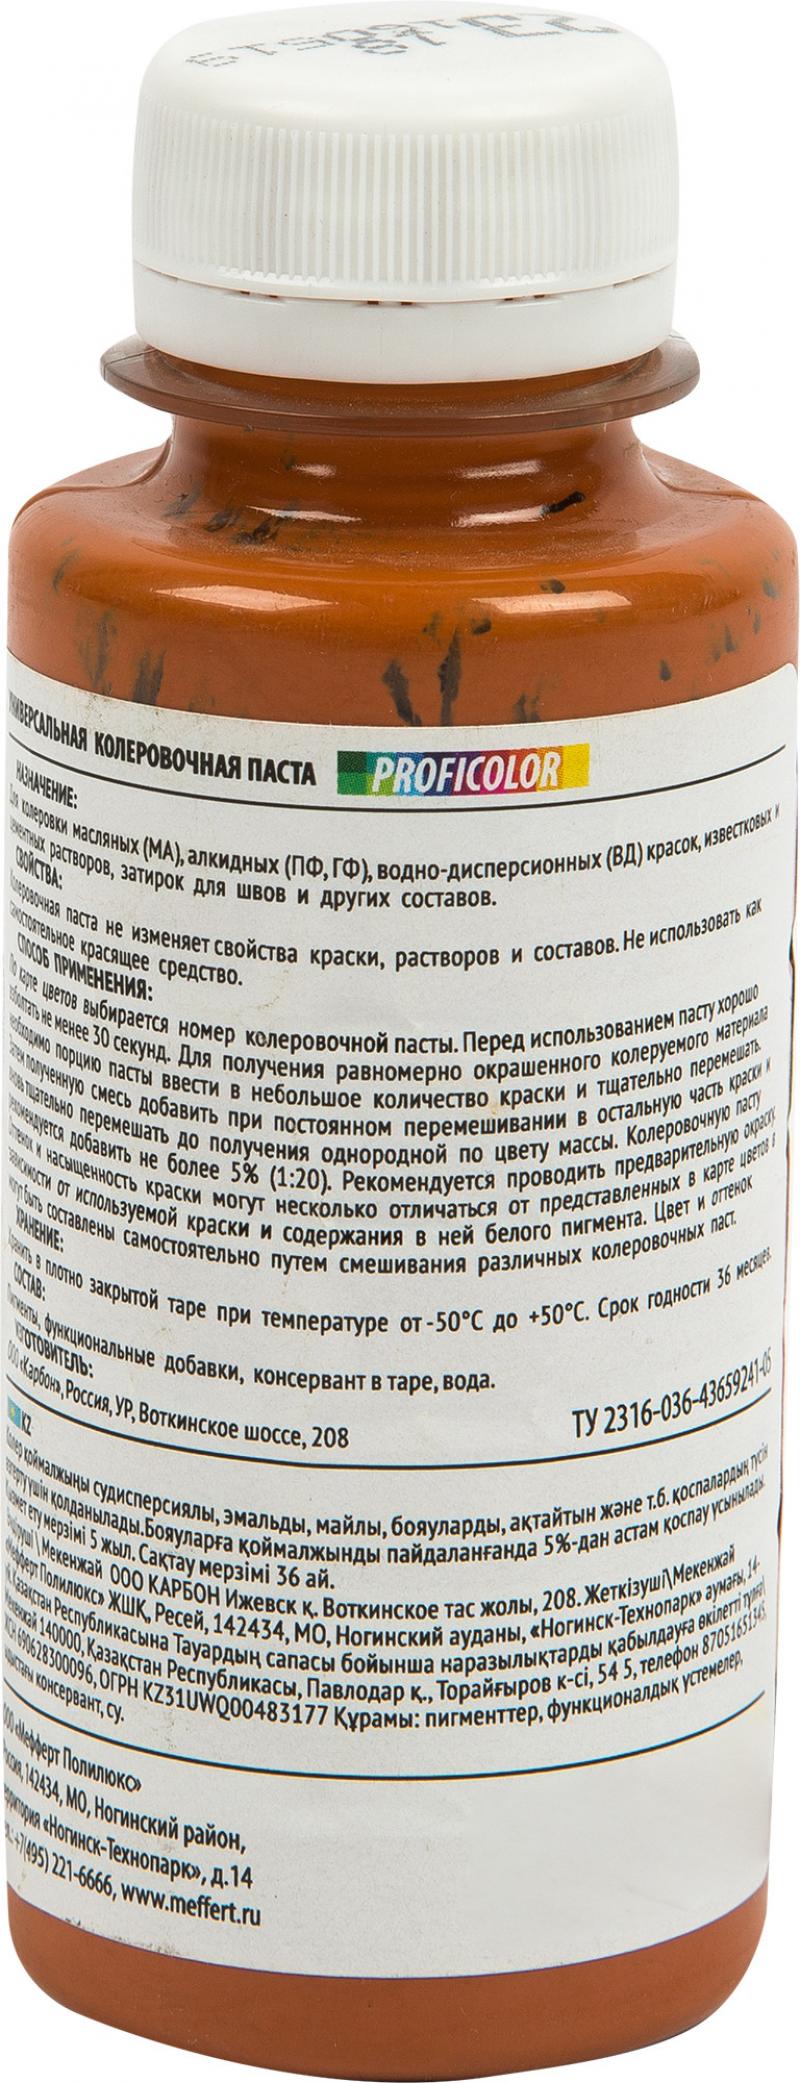 Колеровочная паста Profilux №23 100 гр цвет карамельный